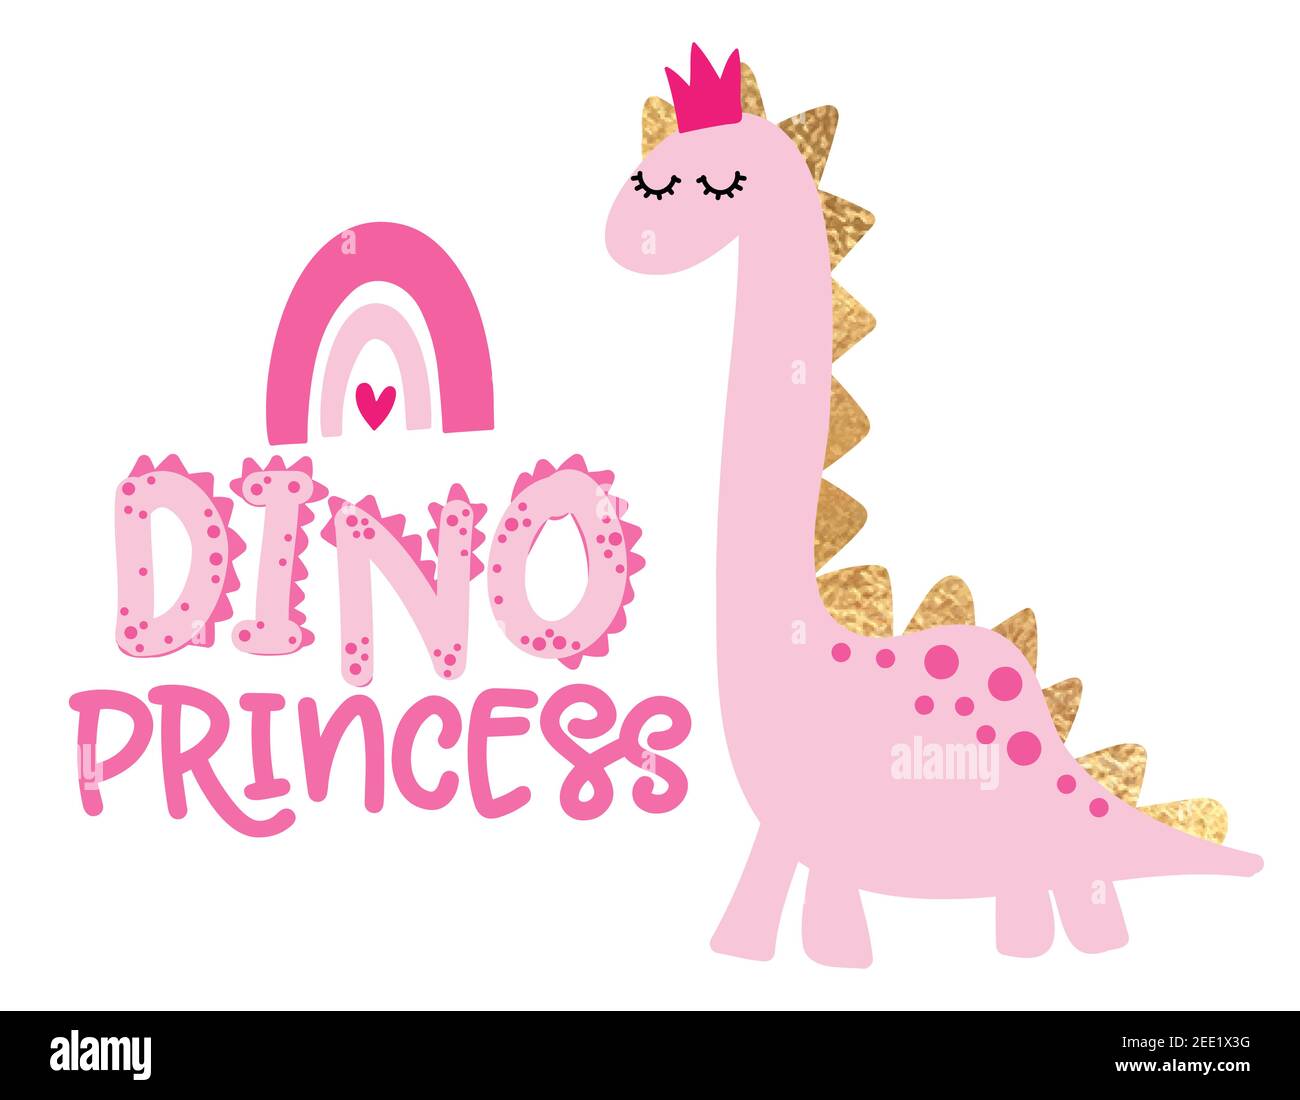 Cute Pink Dinosaur Vector Illustration Stock Illustration